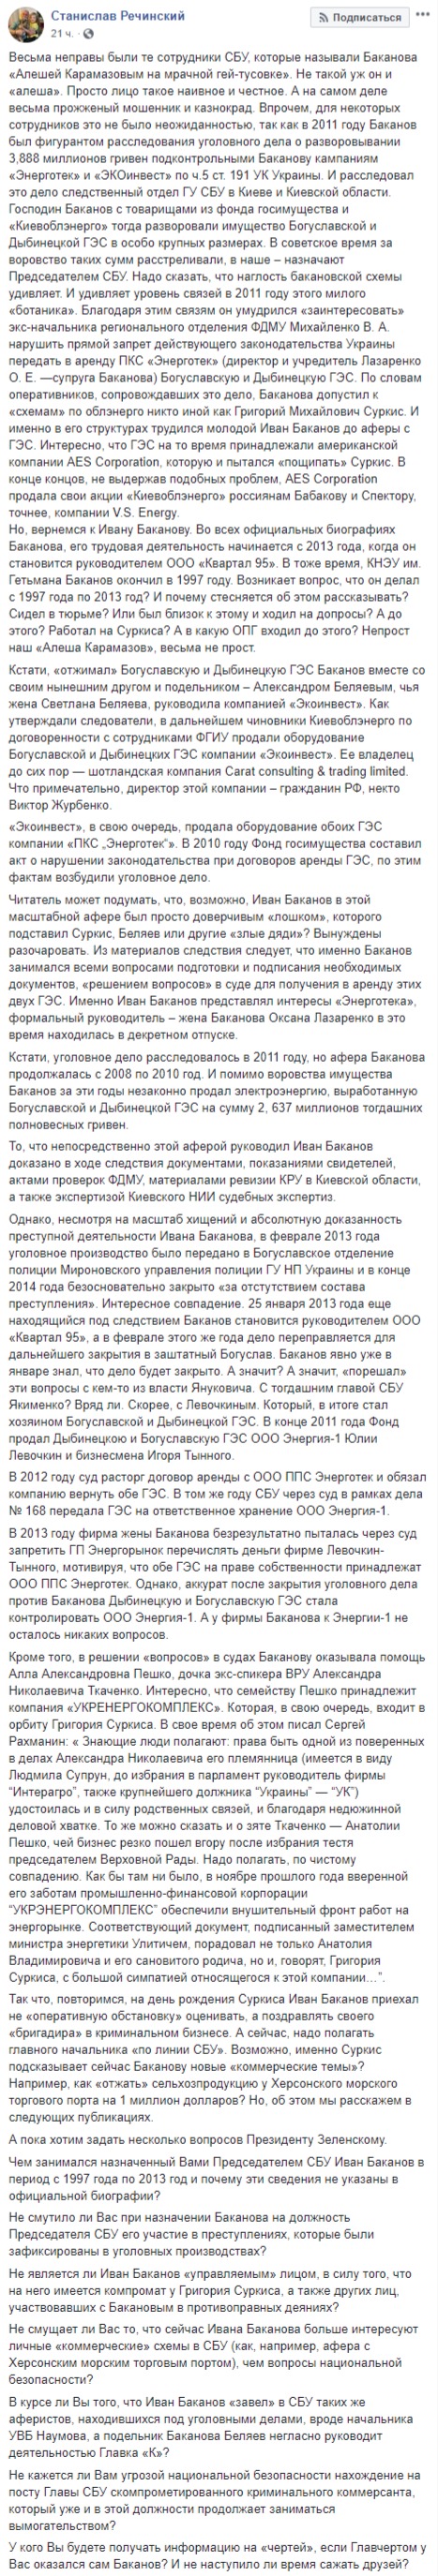 В 2011 году Баканов был фигурантом расследования о разворовывании 3,888 млн грн, в 2014-м дело закрыли, - журналист Речинский 01